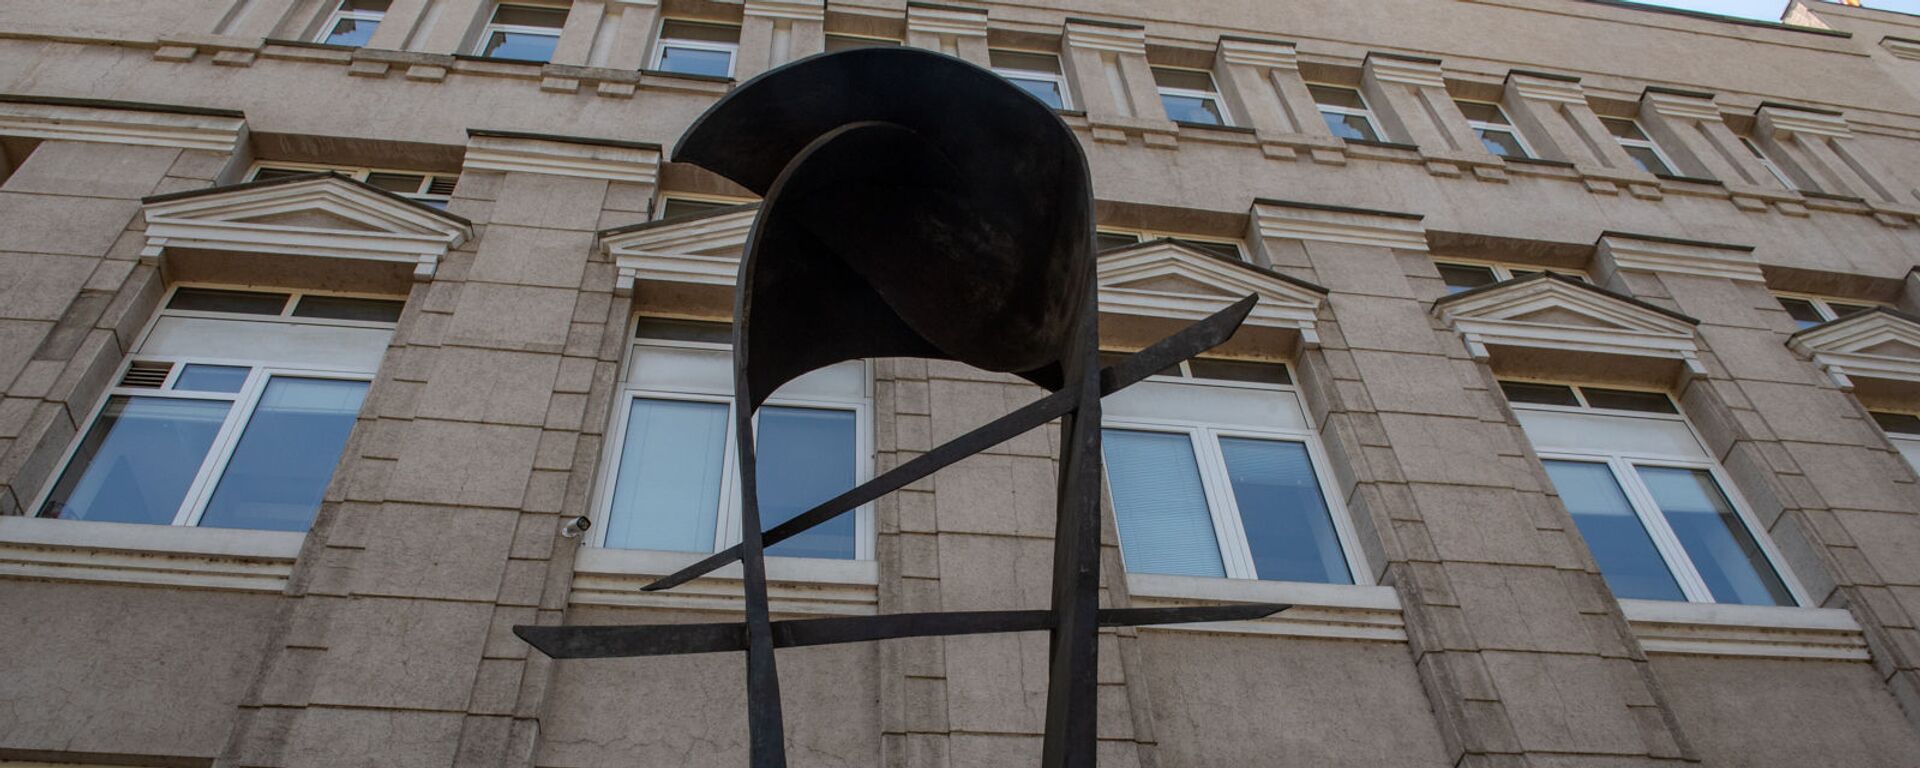 Скульптура армянскому драму перед зданием Центрального Банка Армении - Sputnik Армения, 1920, 14.09.2021